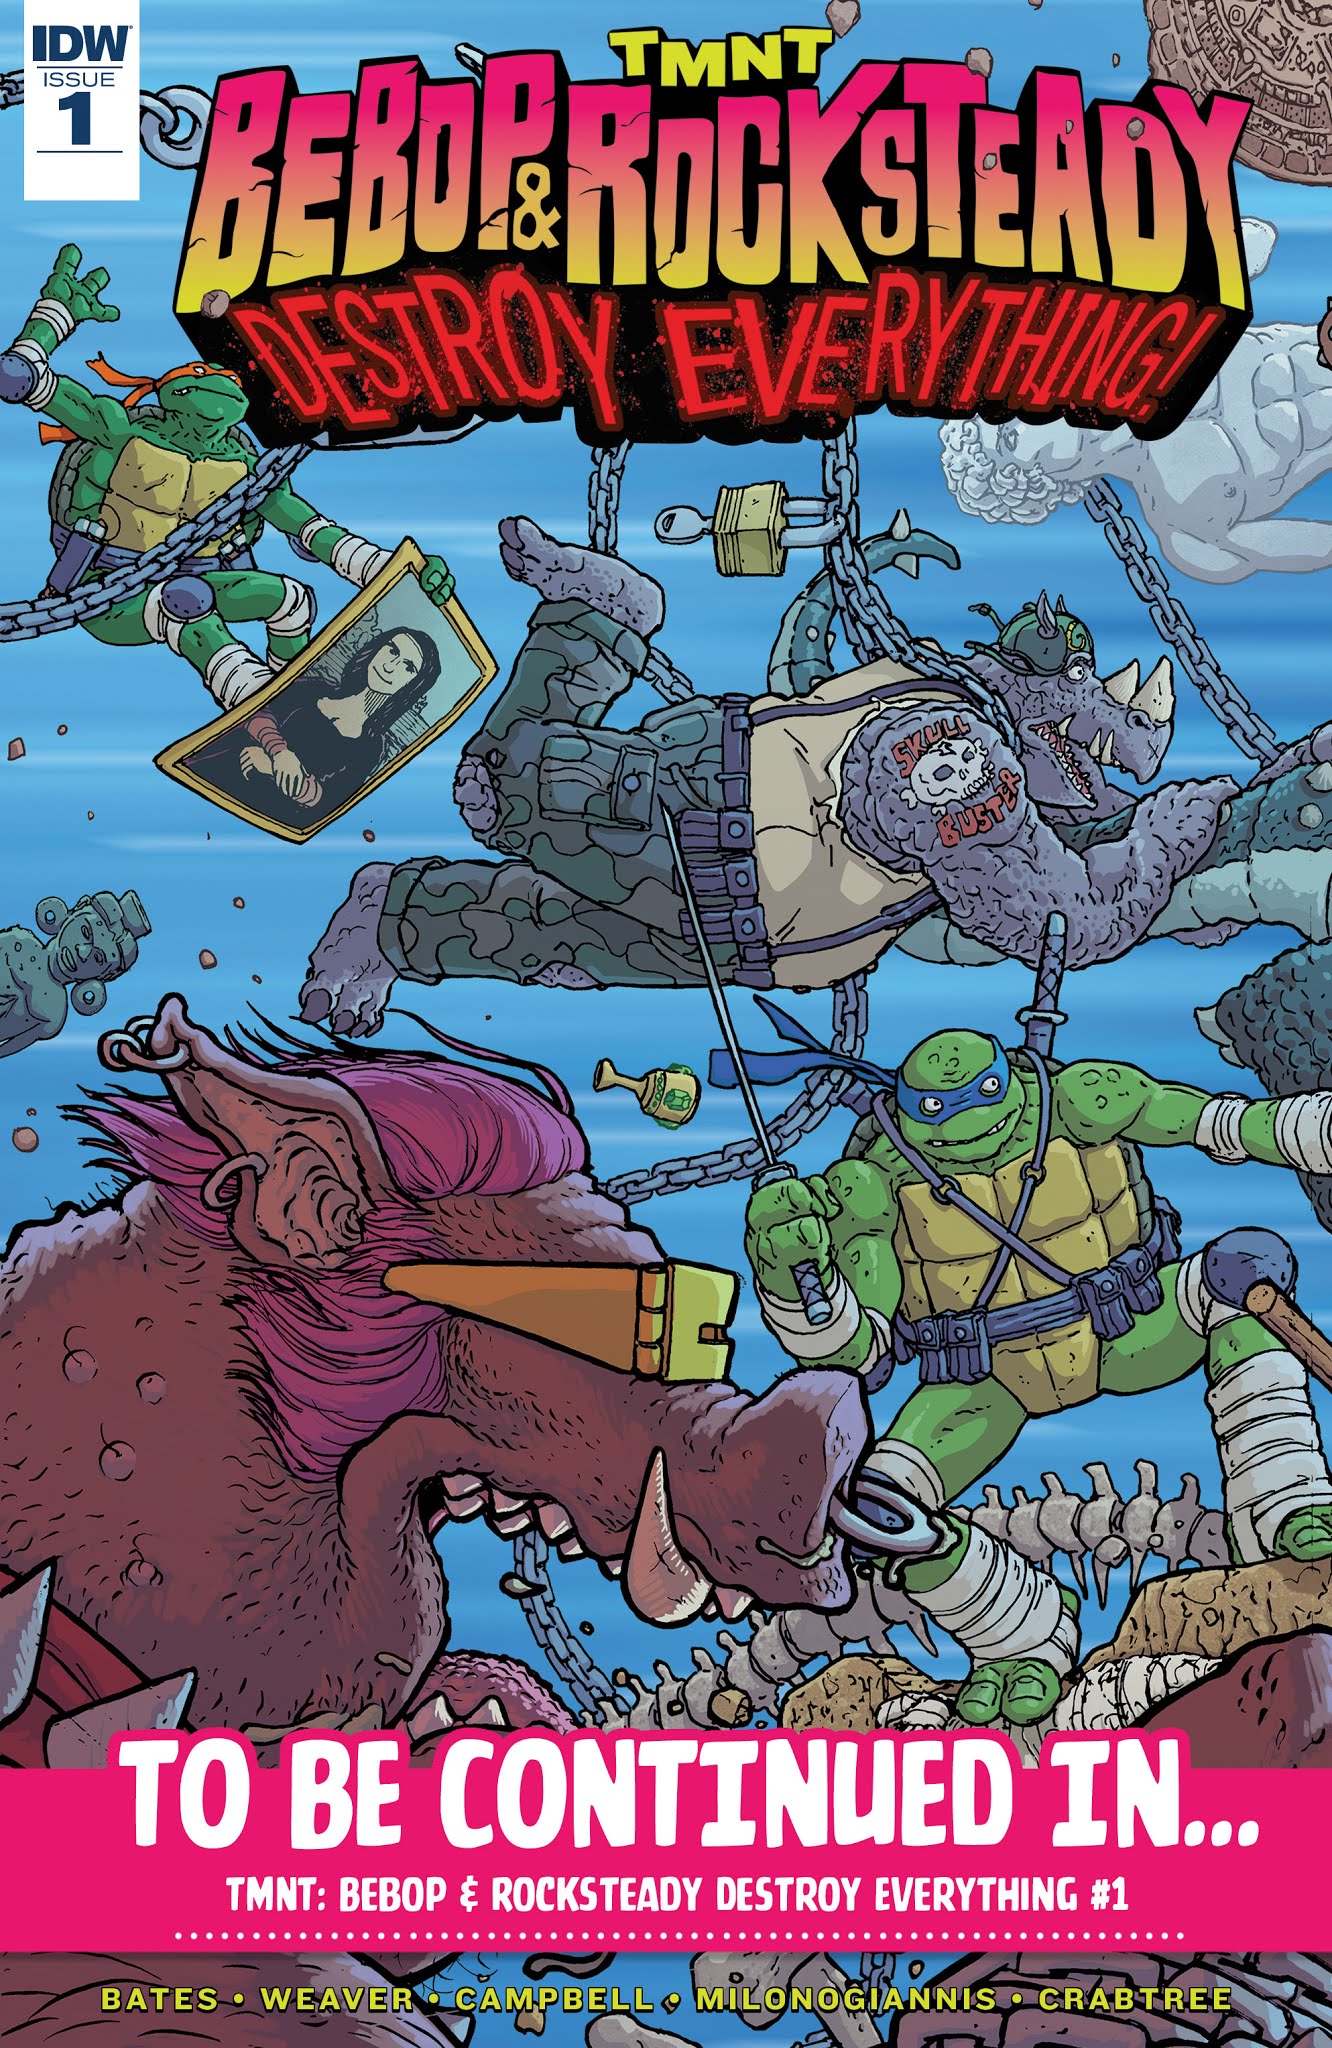 Read online Teenage Mutant Ninja Turtles: Urban Legends comic -  Issue #4 - 28